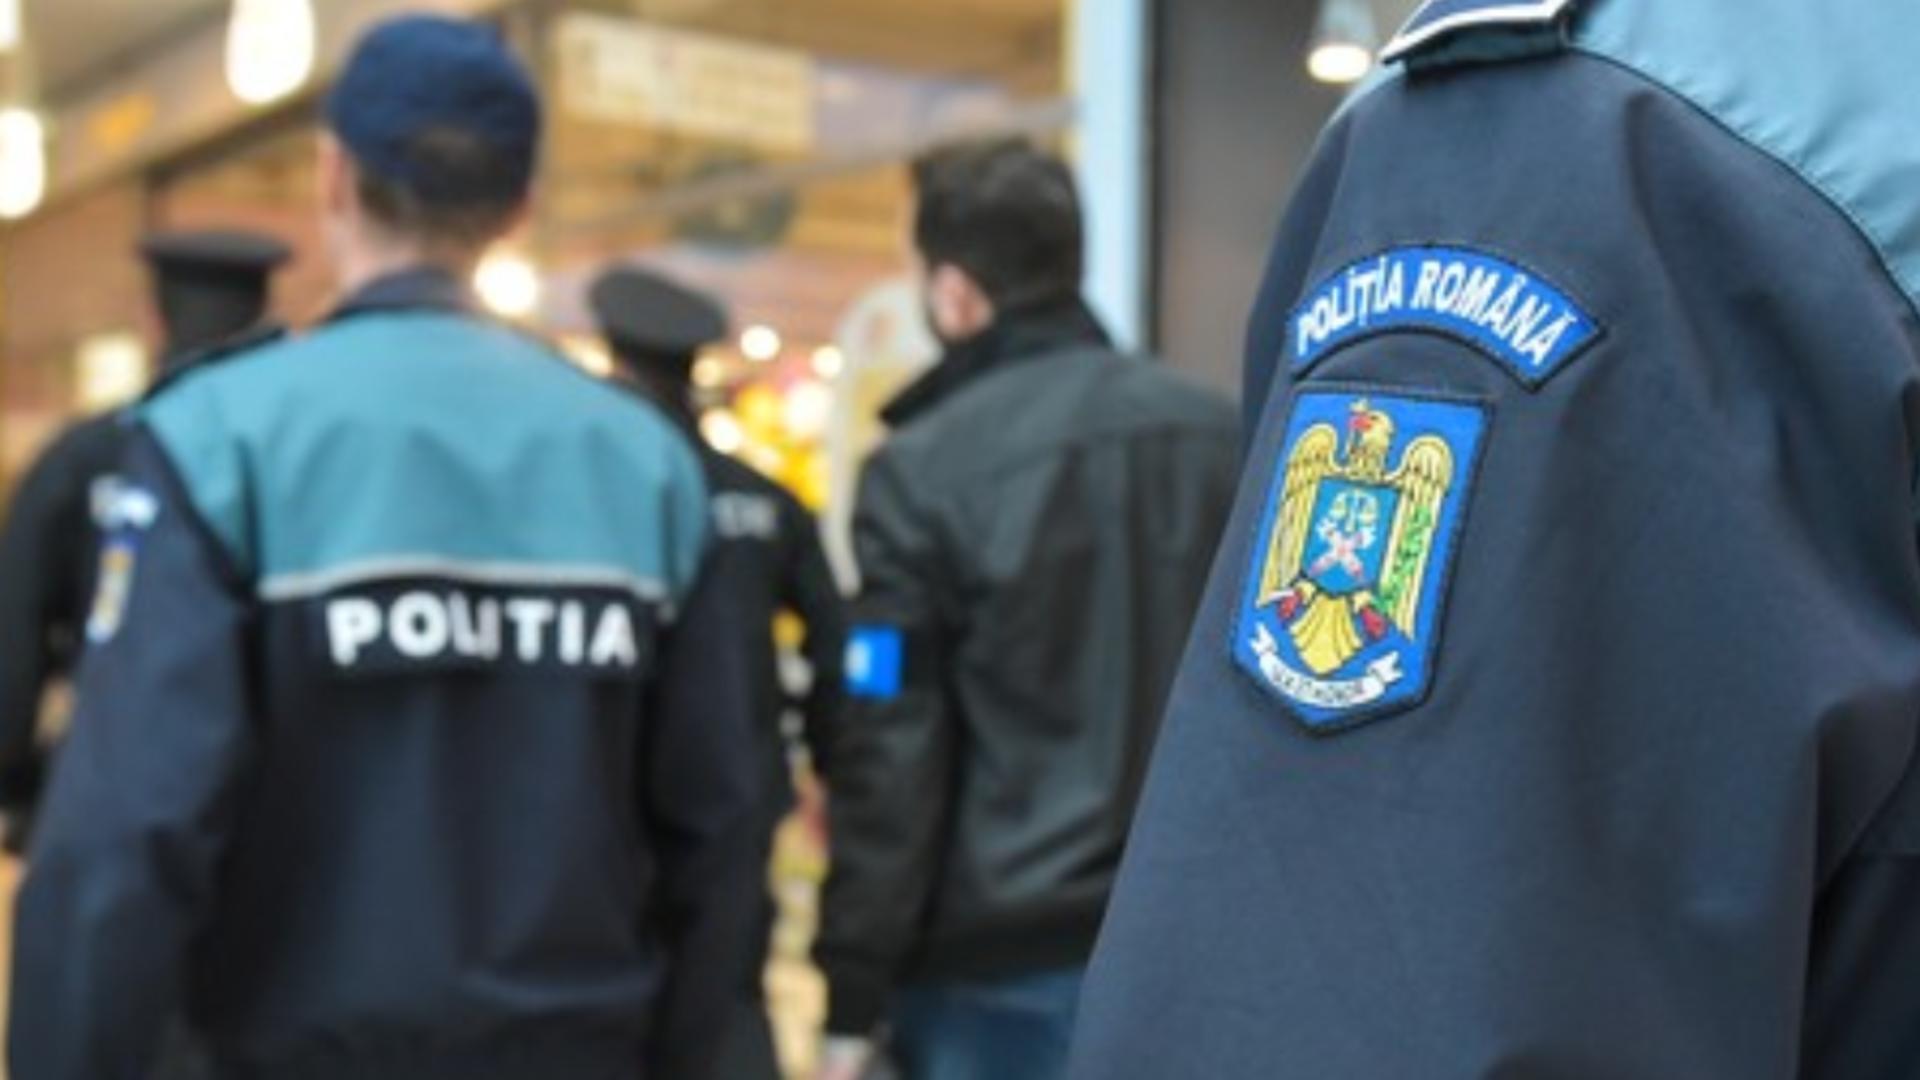 Un chef între polițiștii din Bihor s-a lăsat cu o bătaie în toată regula. Bătăușii cu epoleți sunt acum anchetați de șefi